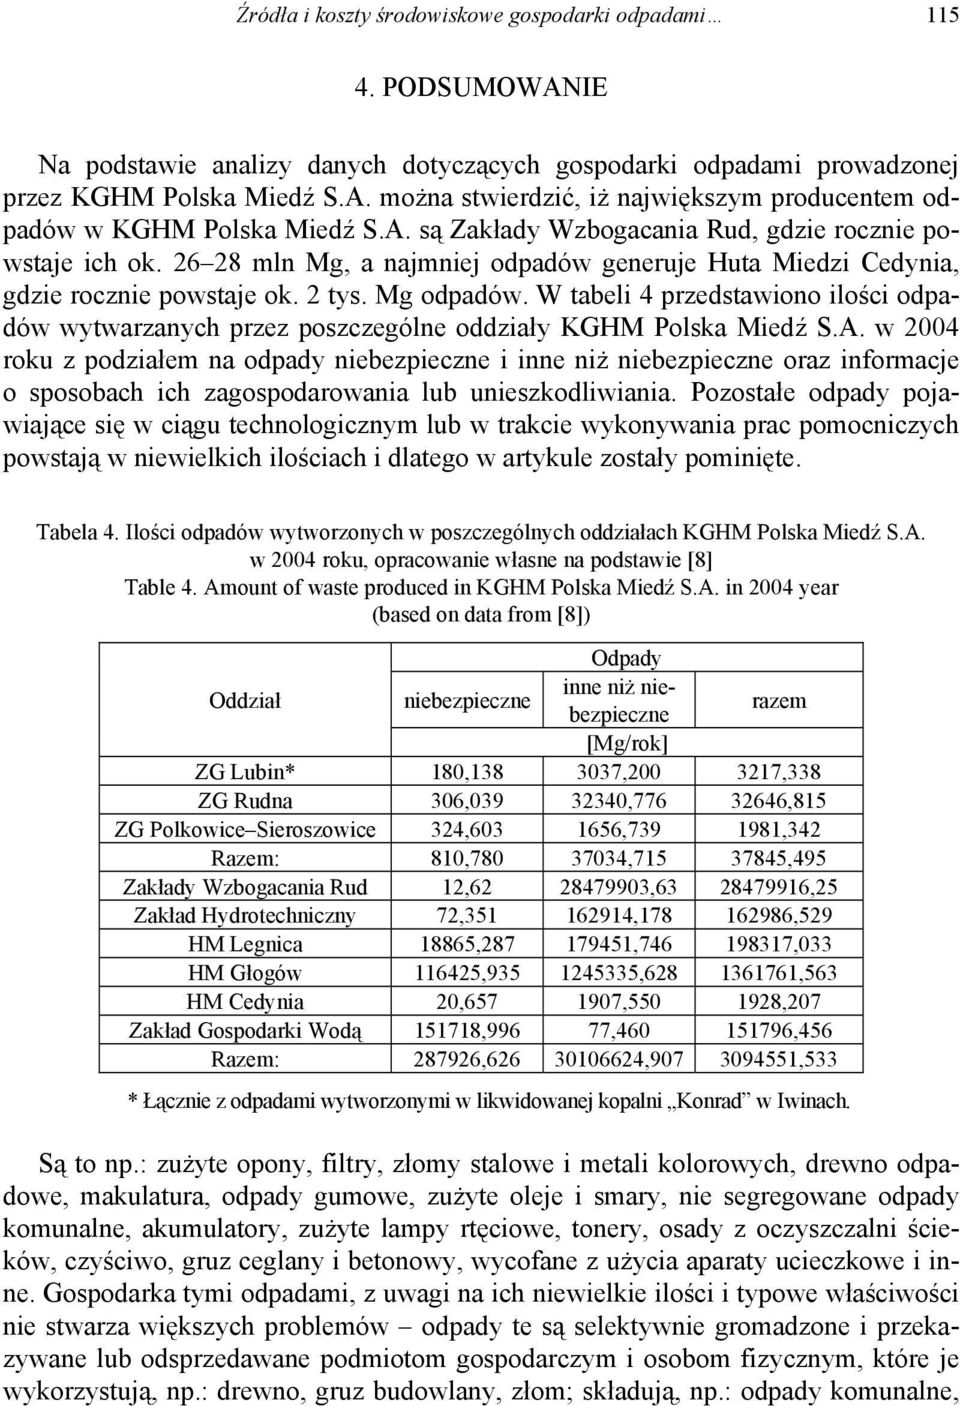 W tabeli 4 przedstawiono ilości odpadów wytwarzanych przez poszczególne oddziały KGHM Polska Miedź S.A.